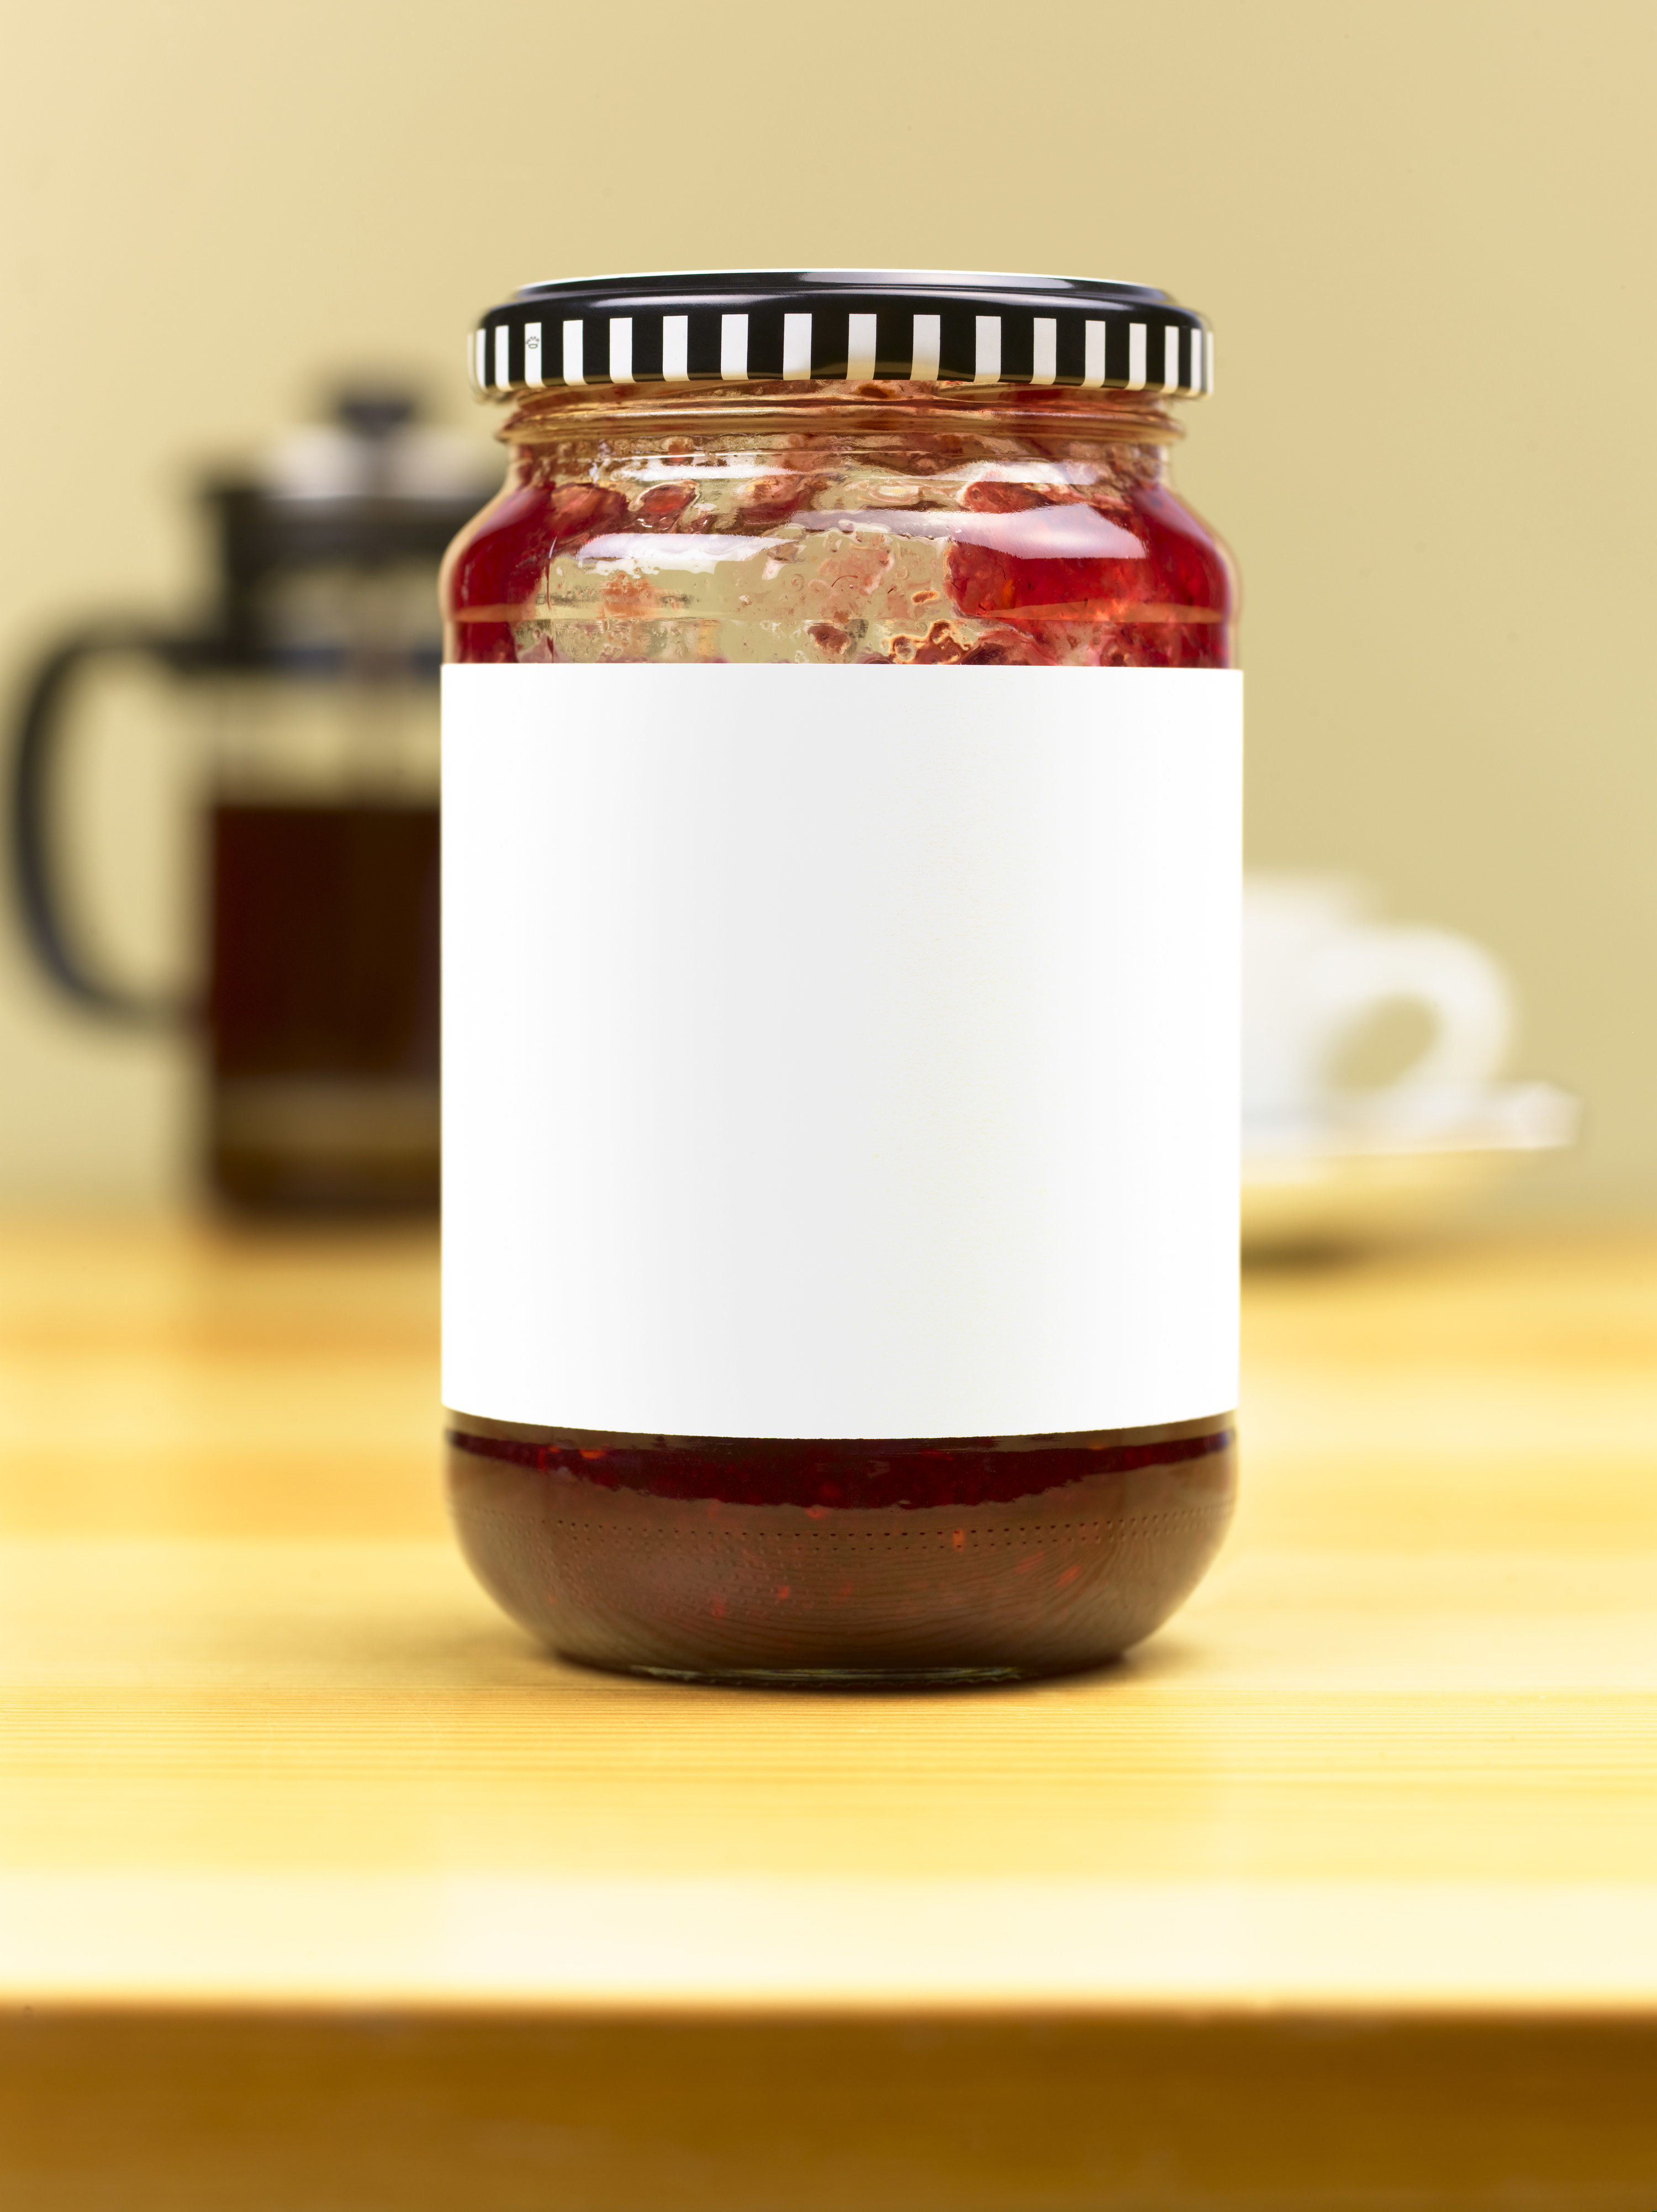 A jam jar